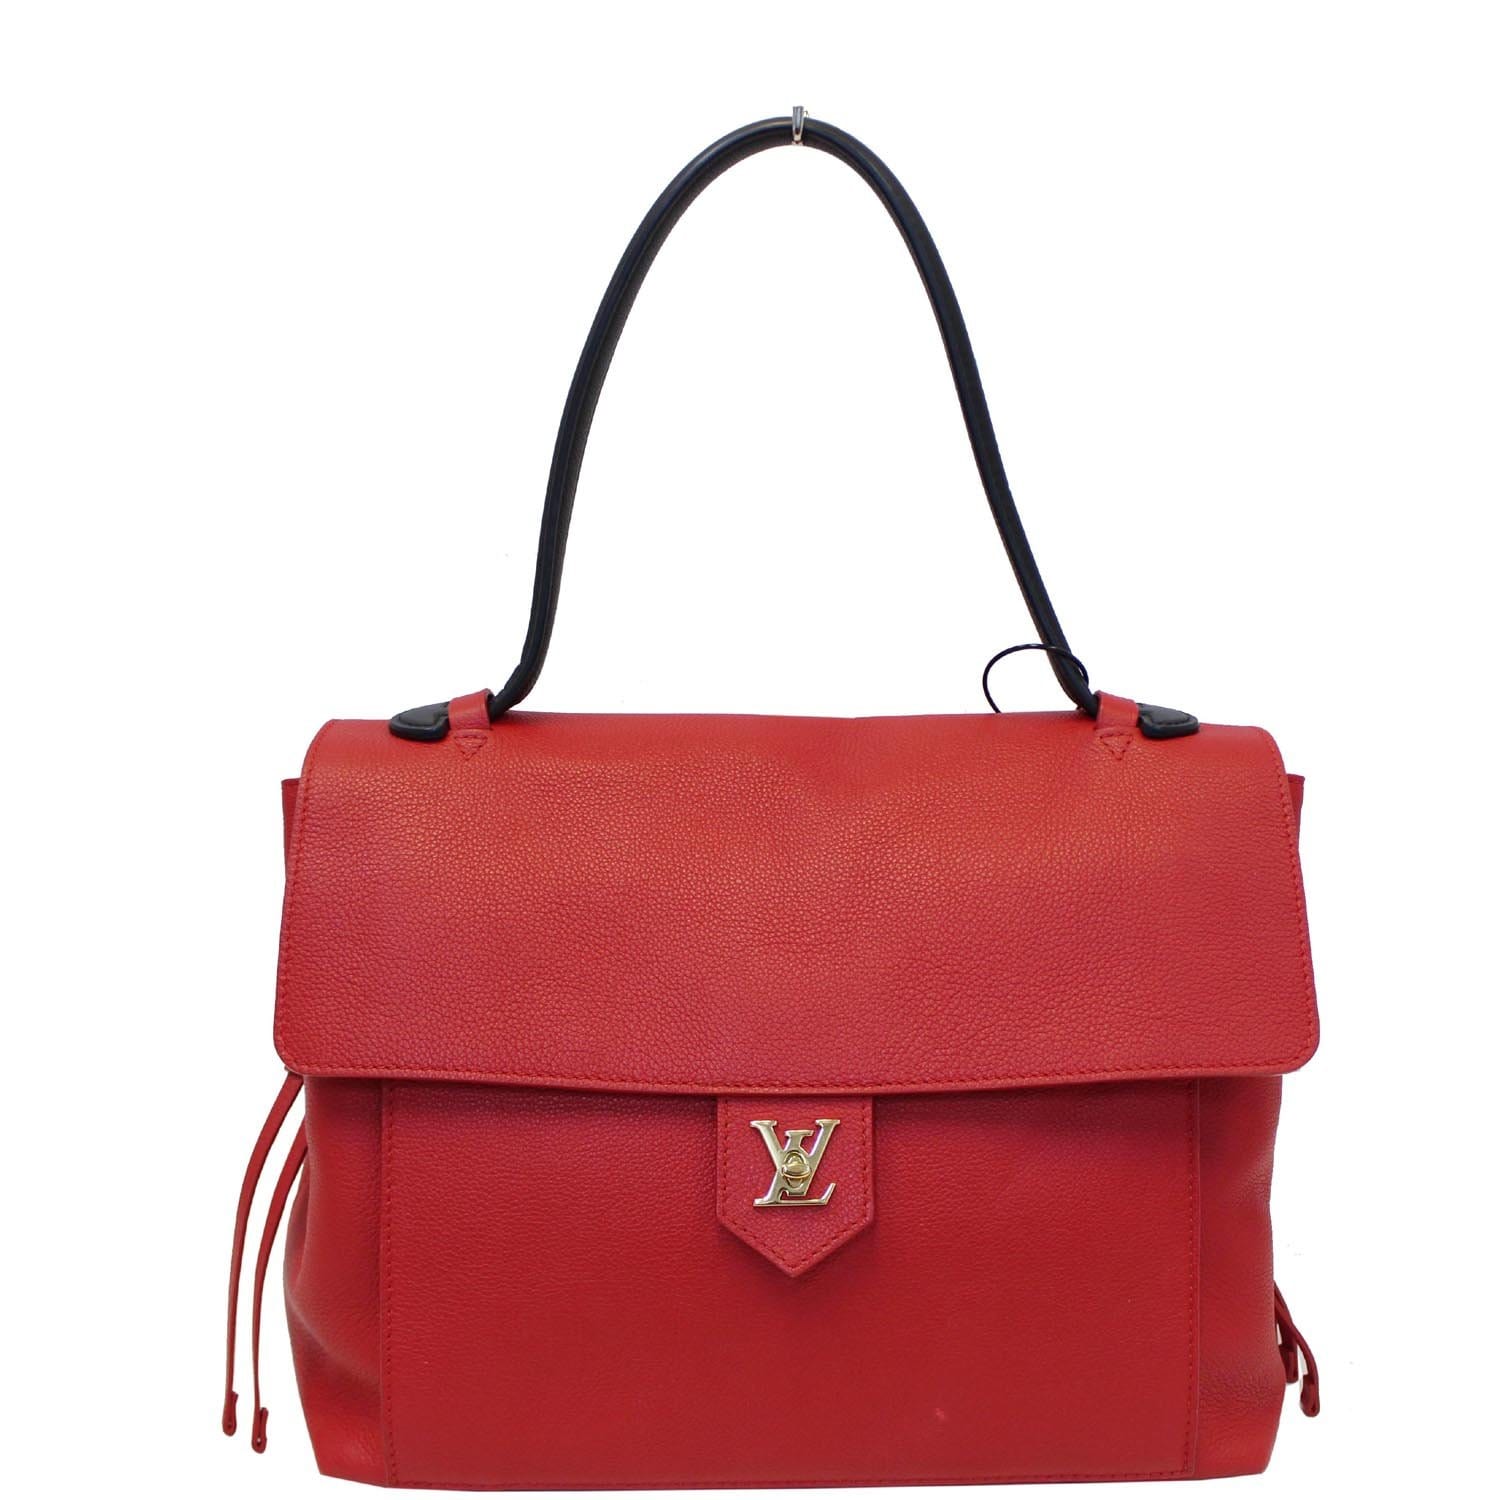 Louis Vuitton Lockme Rivets Embellished PM Shoulder Bag